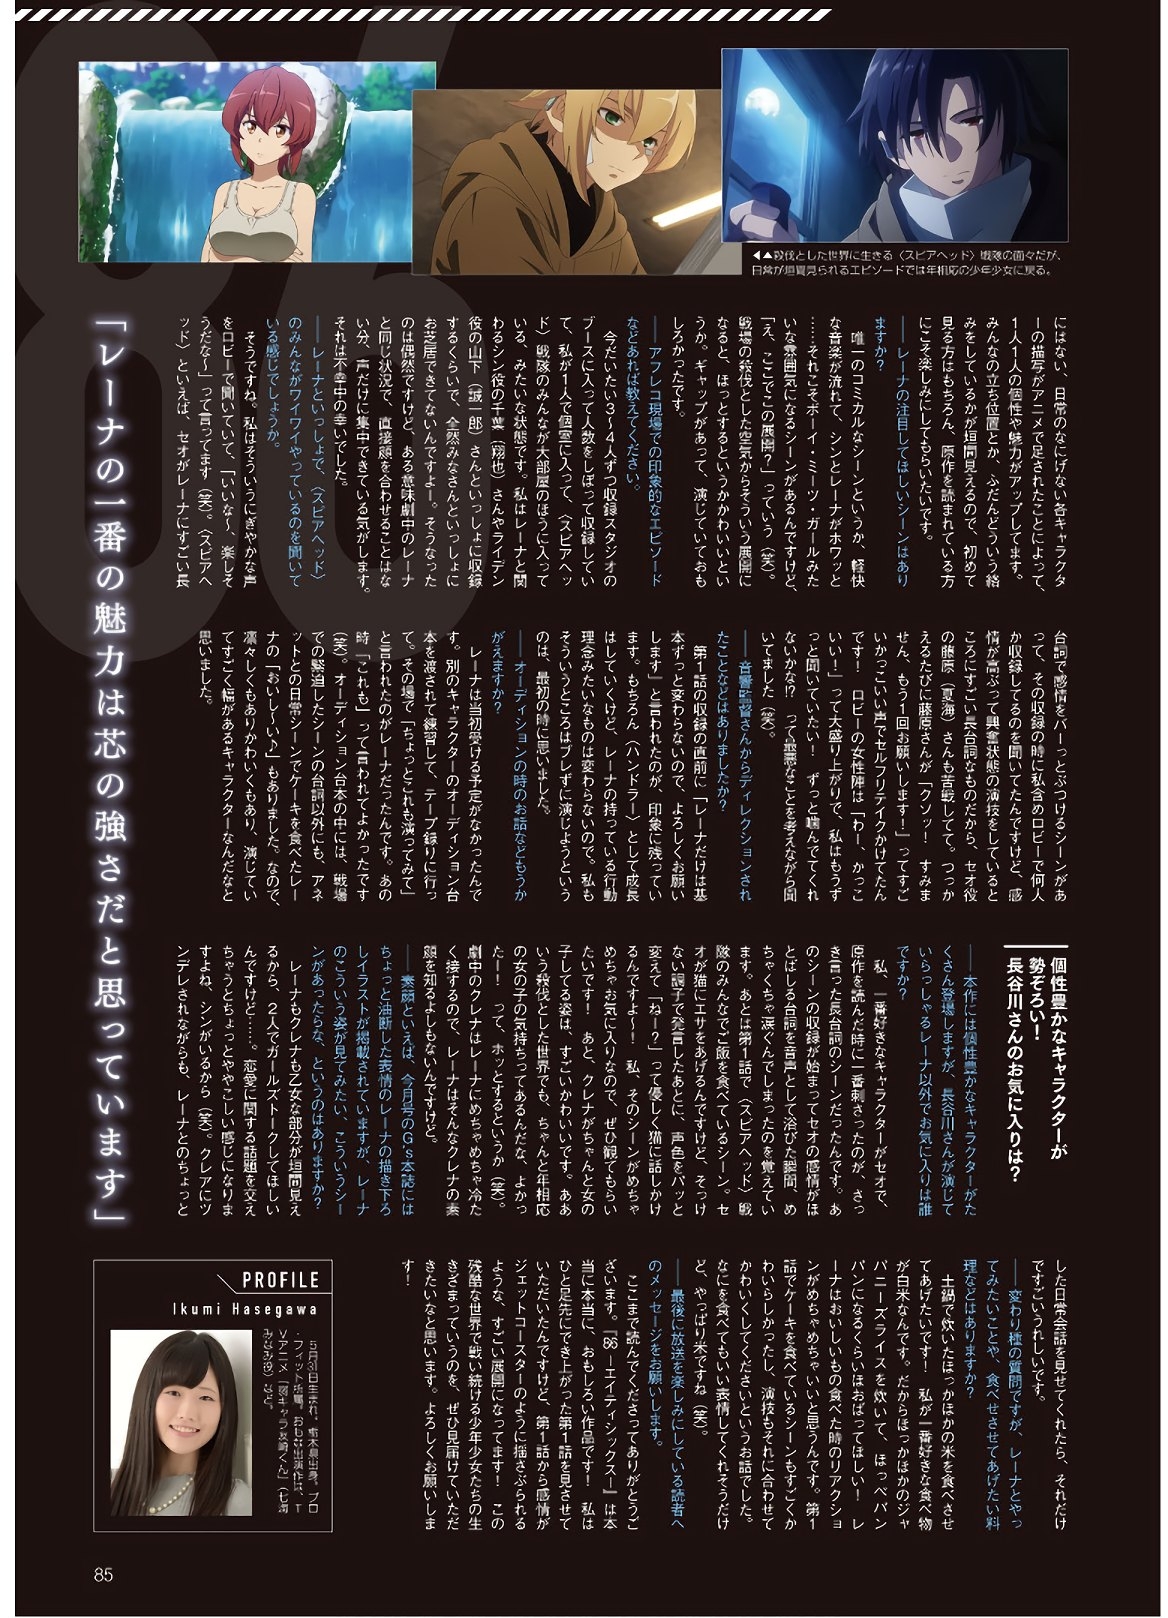 Dengeki G's Magazine #286 - May 2021 82